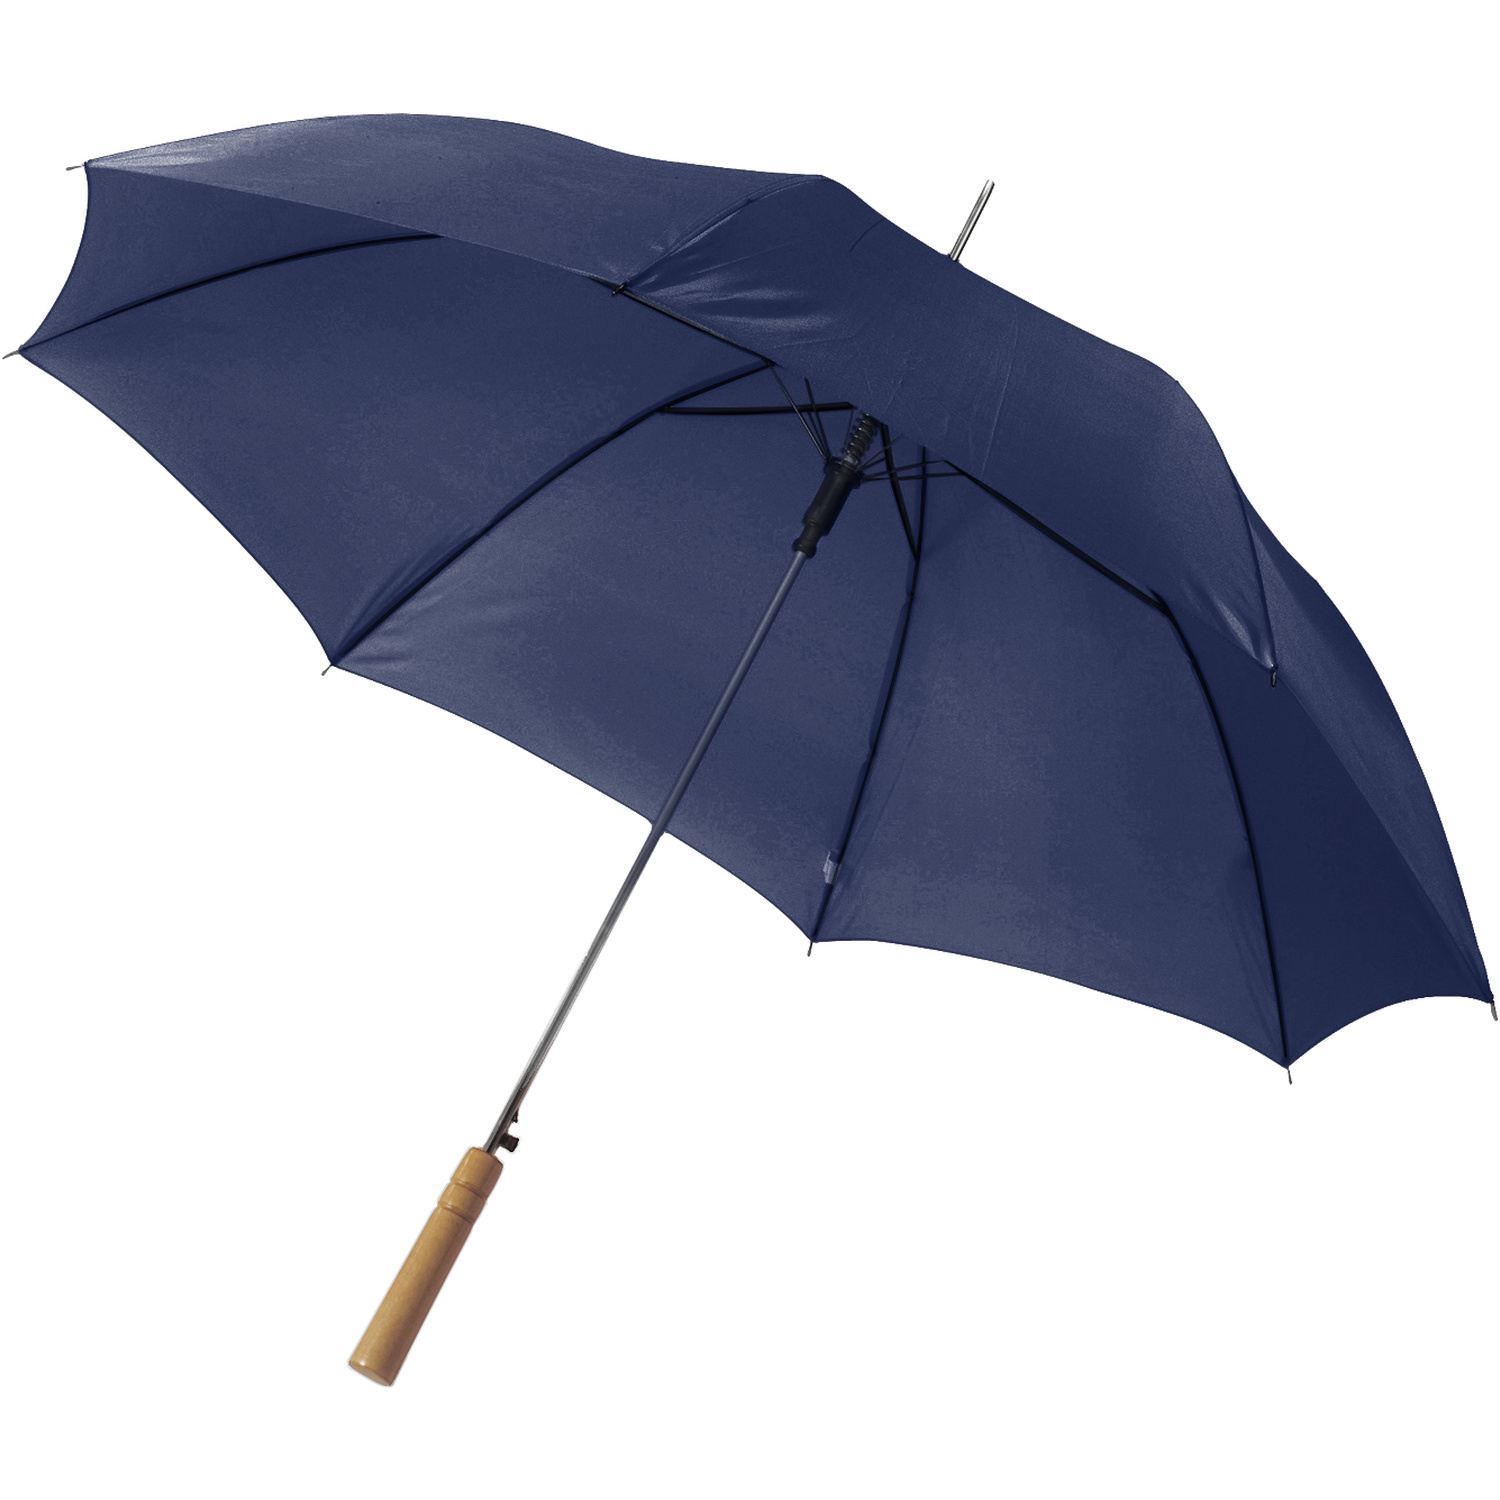 004064 005999999 3d045 ins pro01 fal - Polyester (190T) umbrella